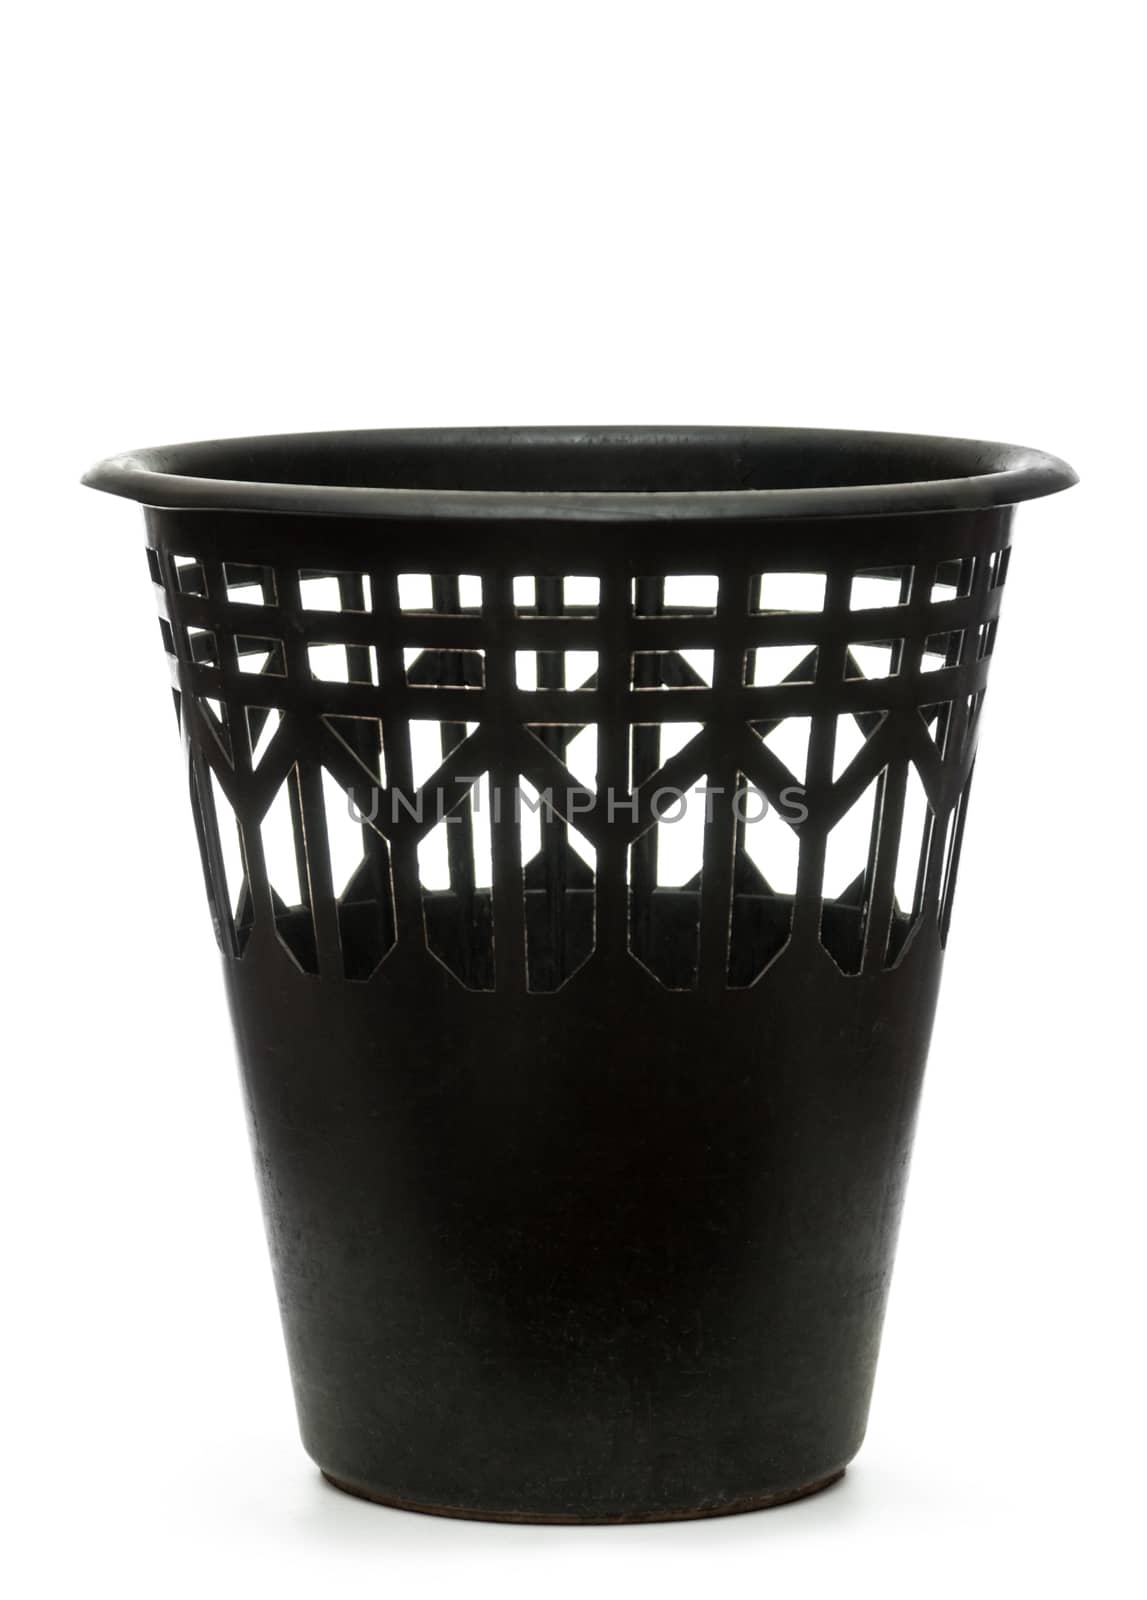 Black wastebasket by Garsya